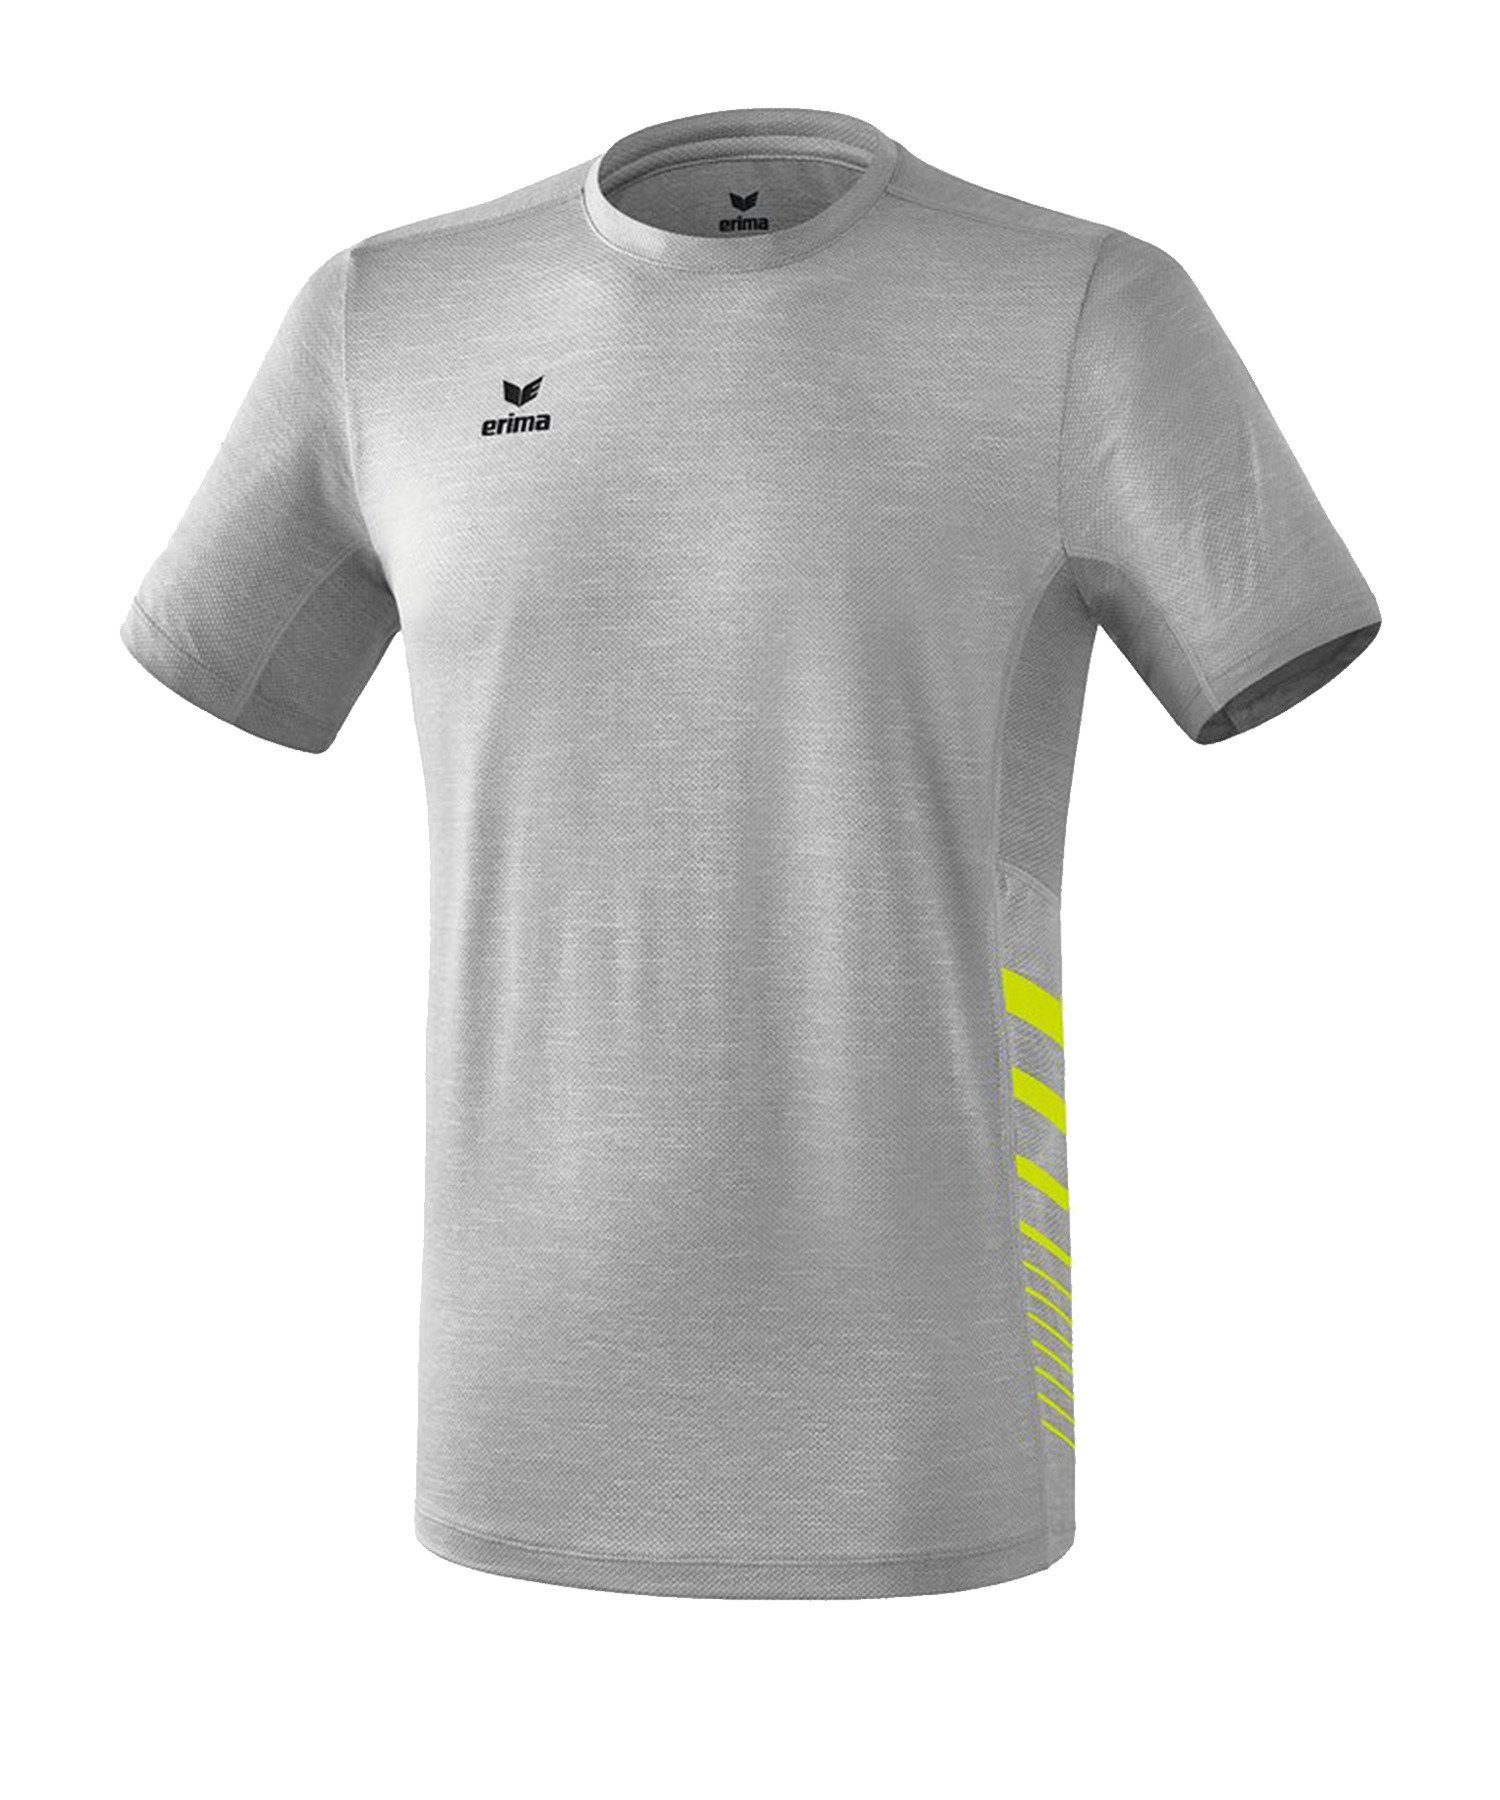 Erima T-Shirt Race Line 2.0 Running T-Shirt default Grau | T-Shirts